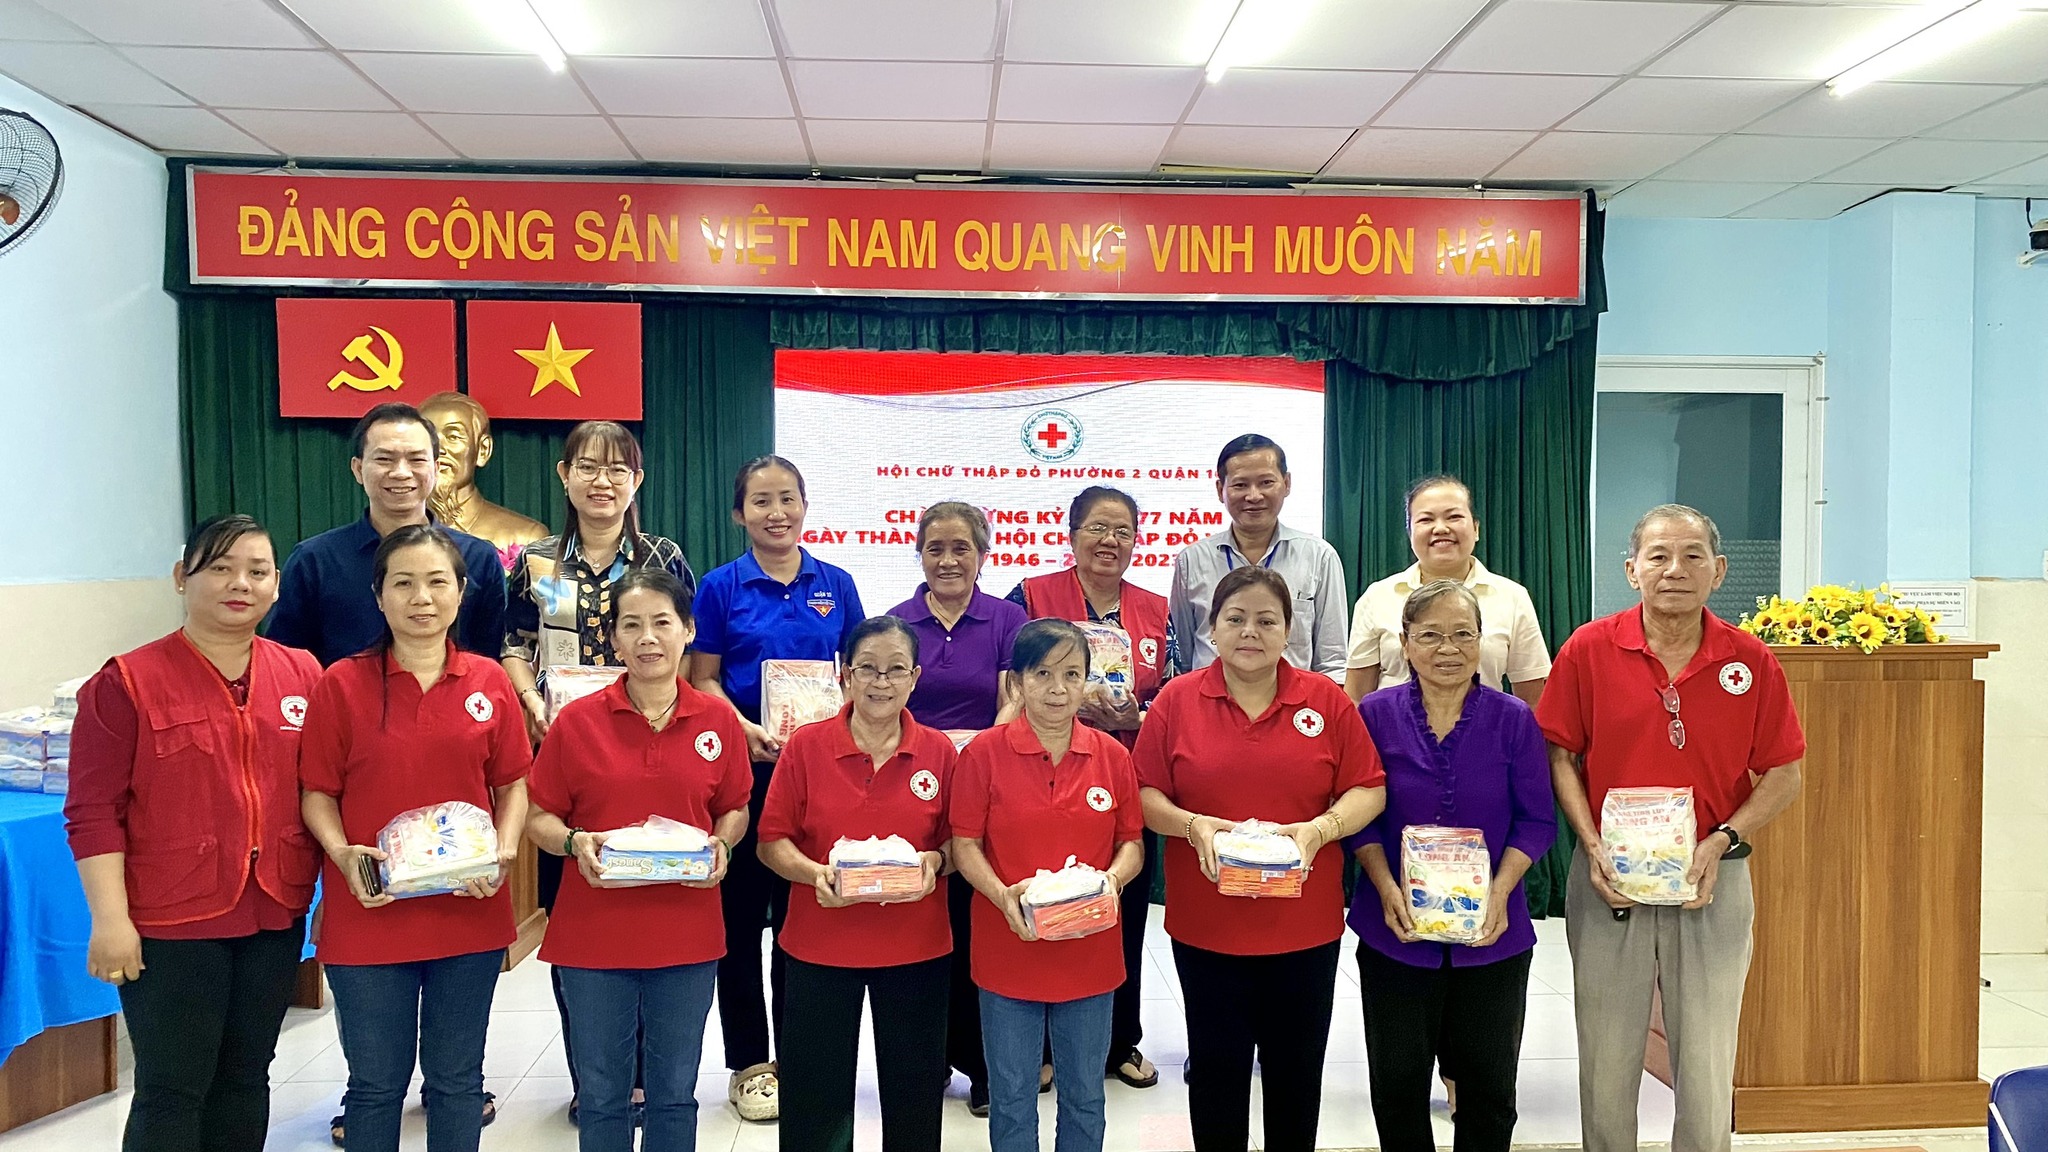 Image: Họp mặt kỷ niệm 77 năm ngày thành lập Hội Chữ thập đỏ Việt Nam (23/11/1946 – 23/11/2023)